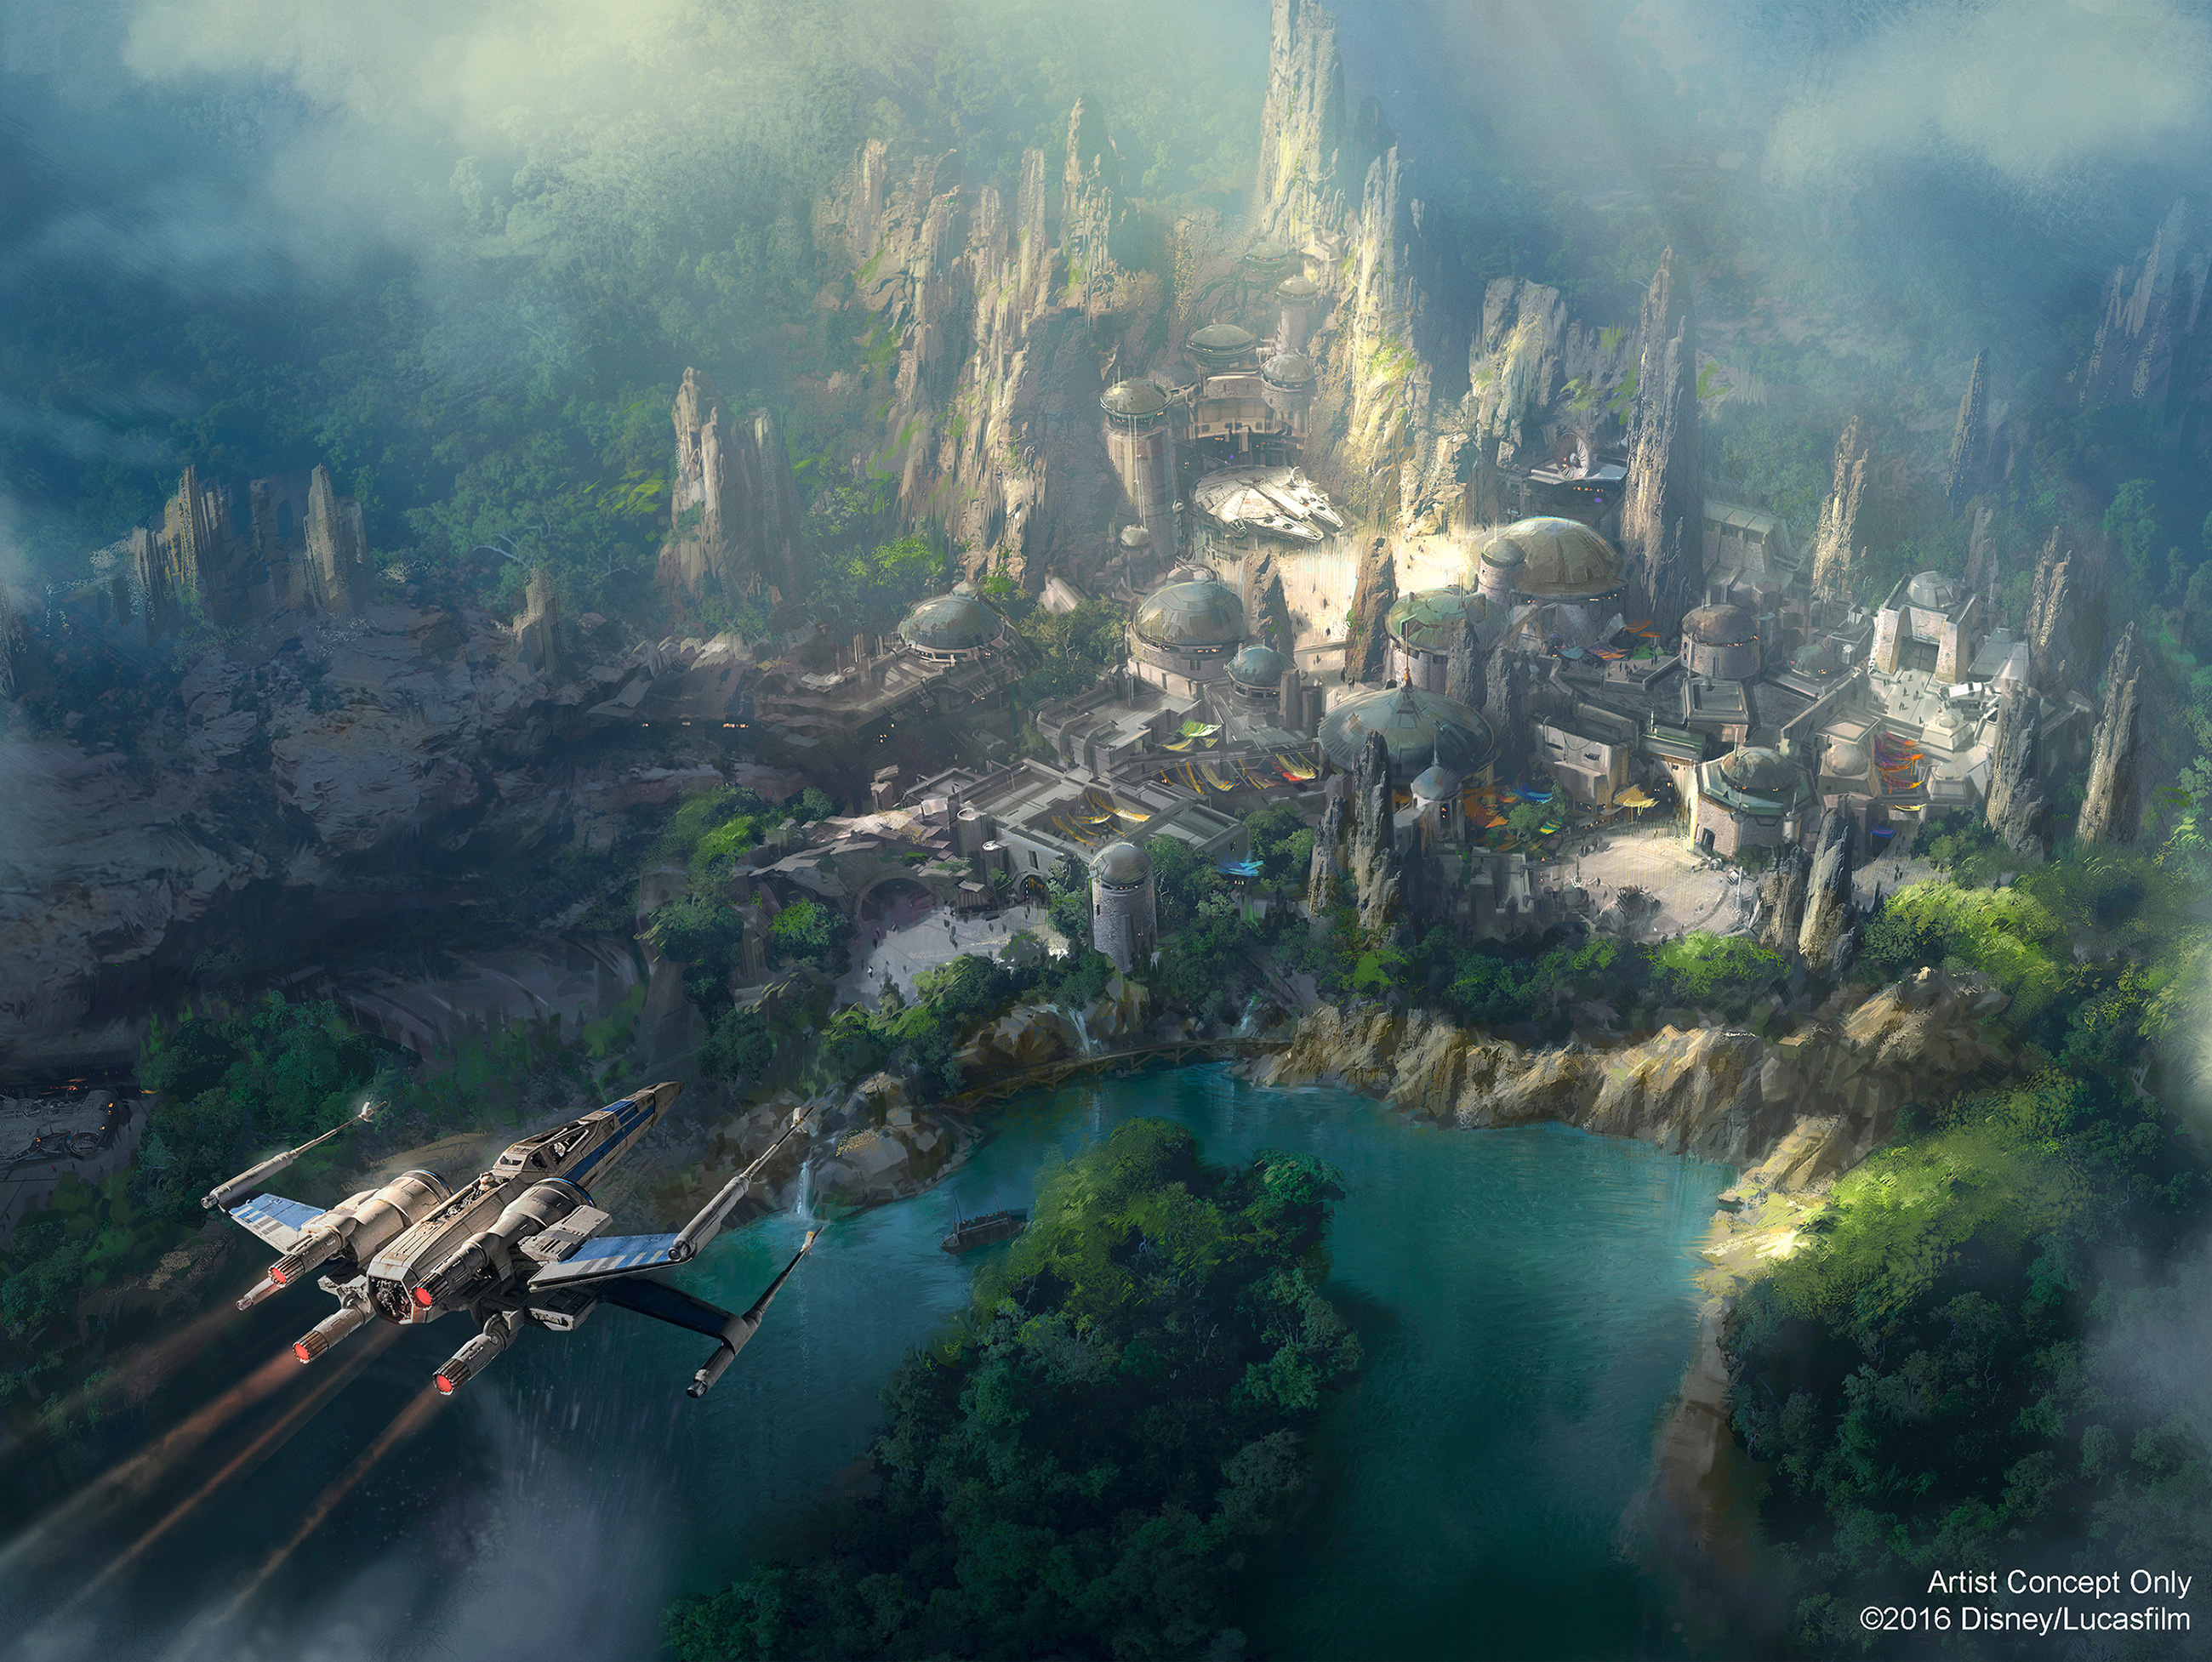 Nova imagem conceitual da Star Wars Land no Disneyland Park